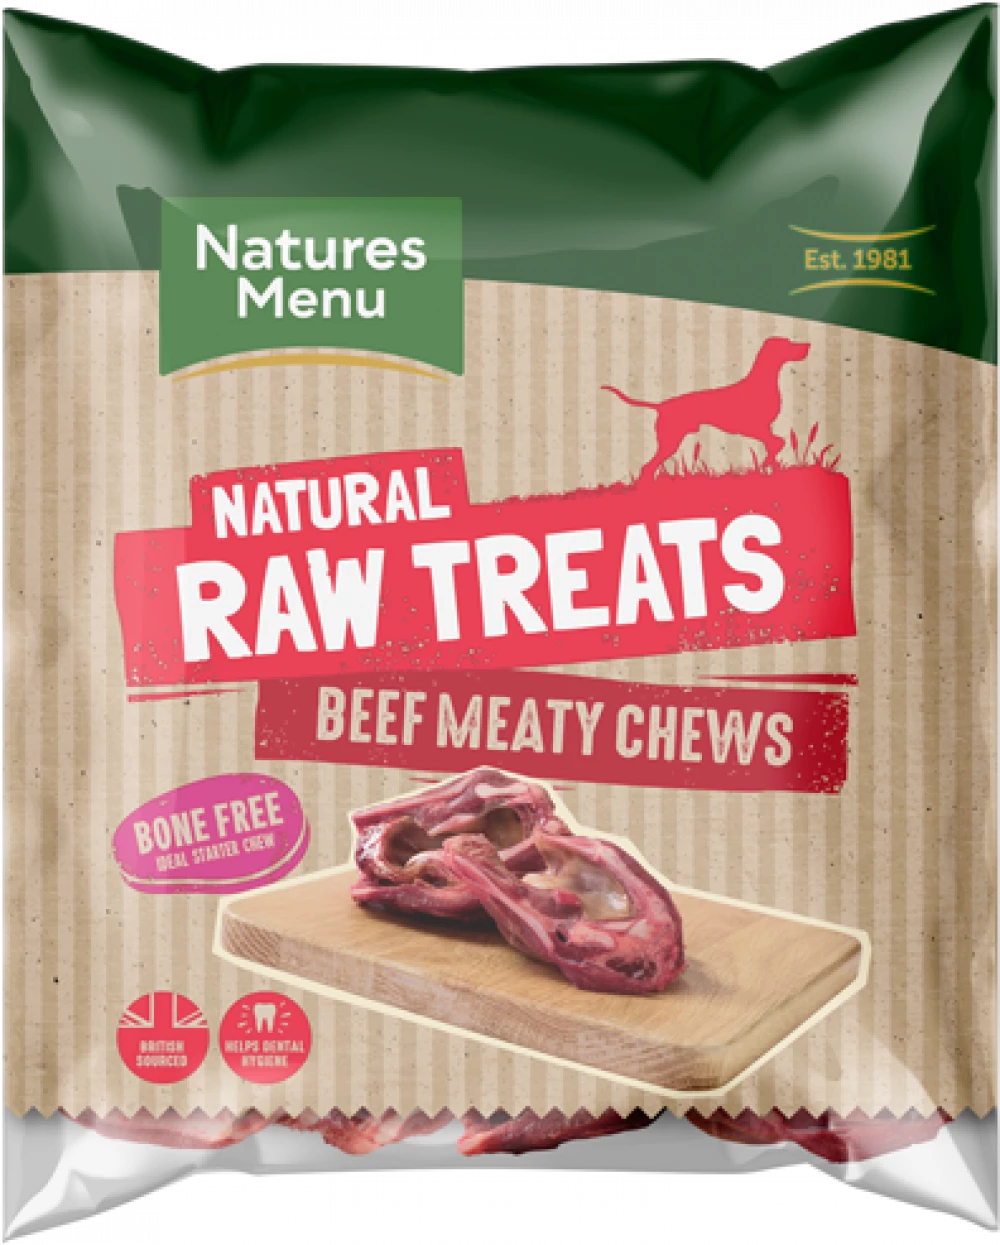 Natures Menu Beef Meaty Chew